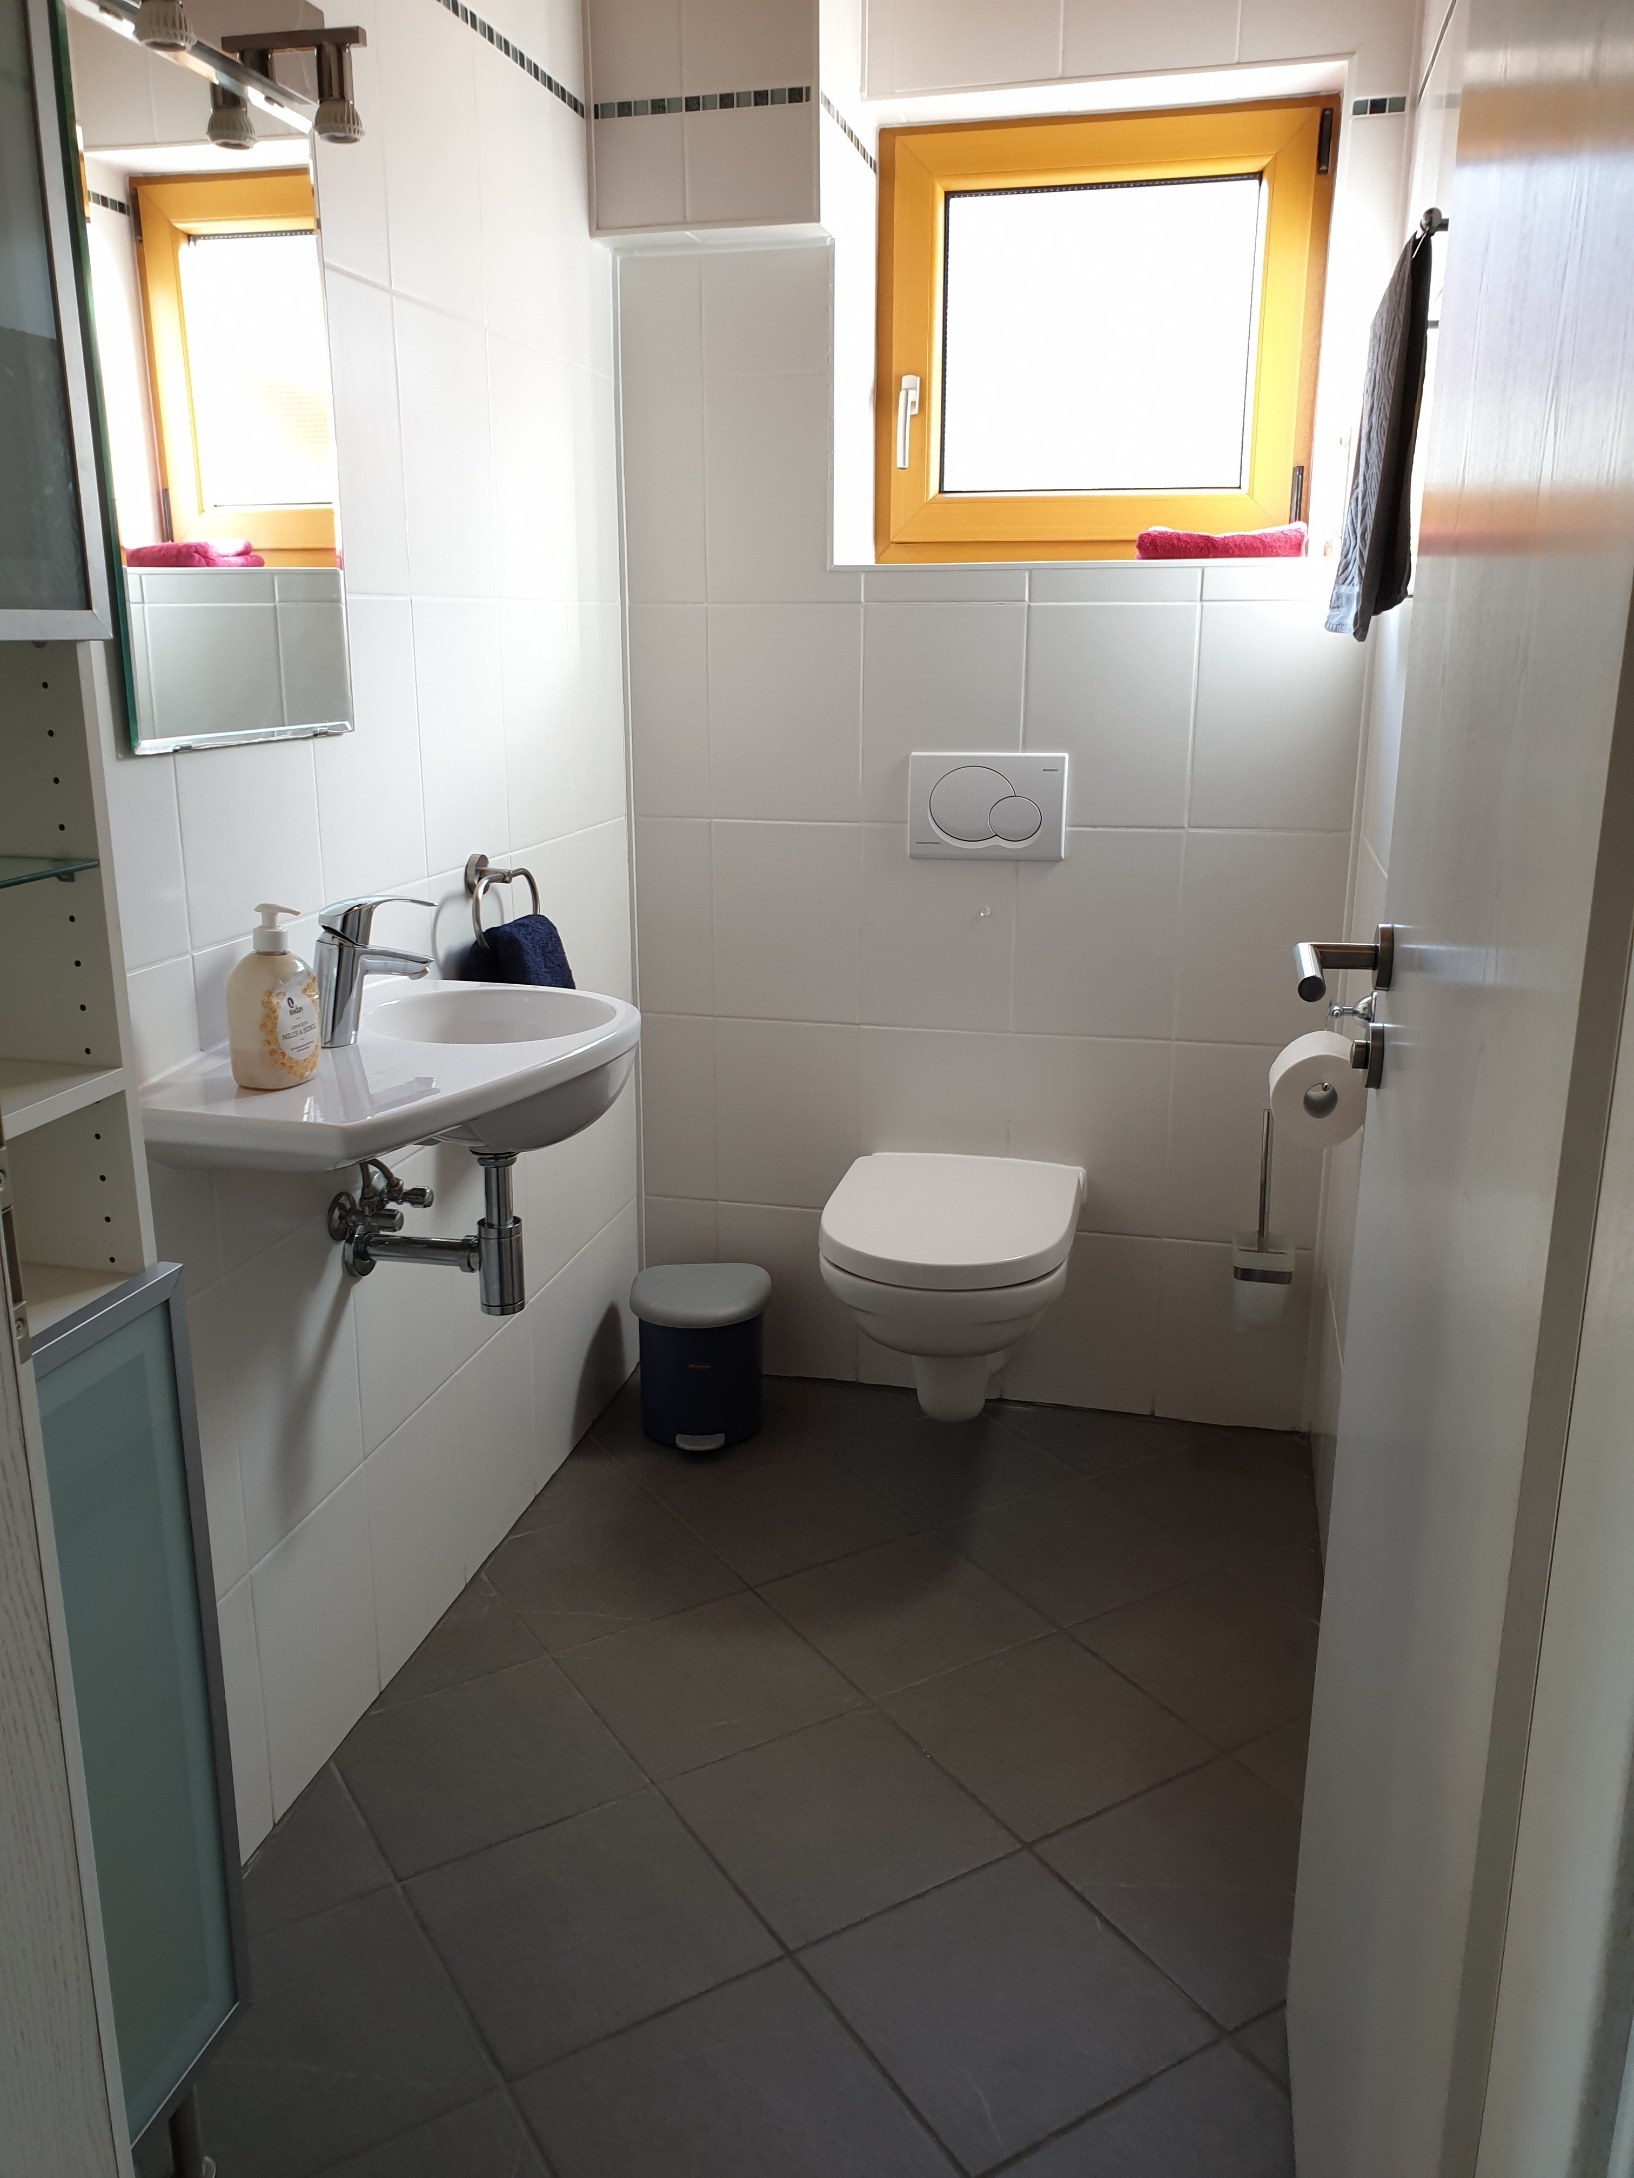 Apartment B - Badezimmer 2, Dusche & WC / Bathroom 2, Shower & Toilet